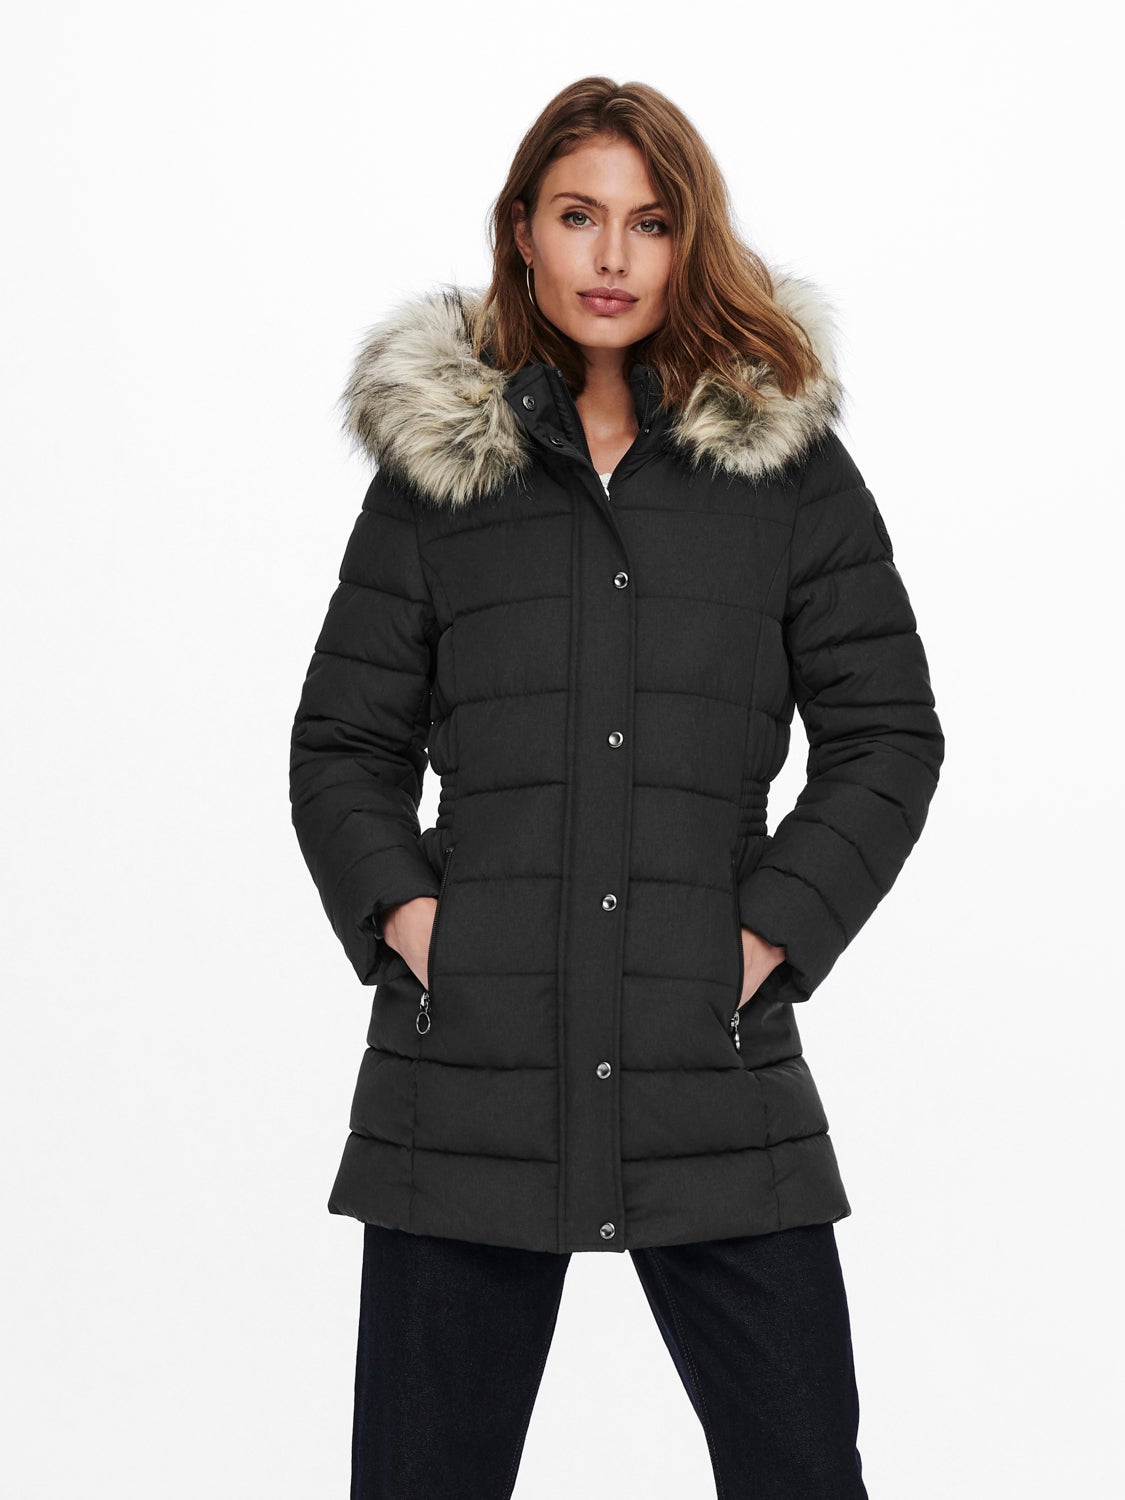 discount 46% Neropale Long coat Gray S WOMEN FASHION Coats Long coat Fur 